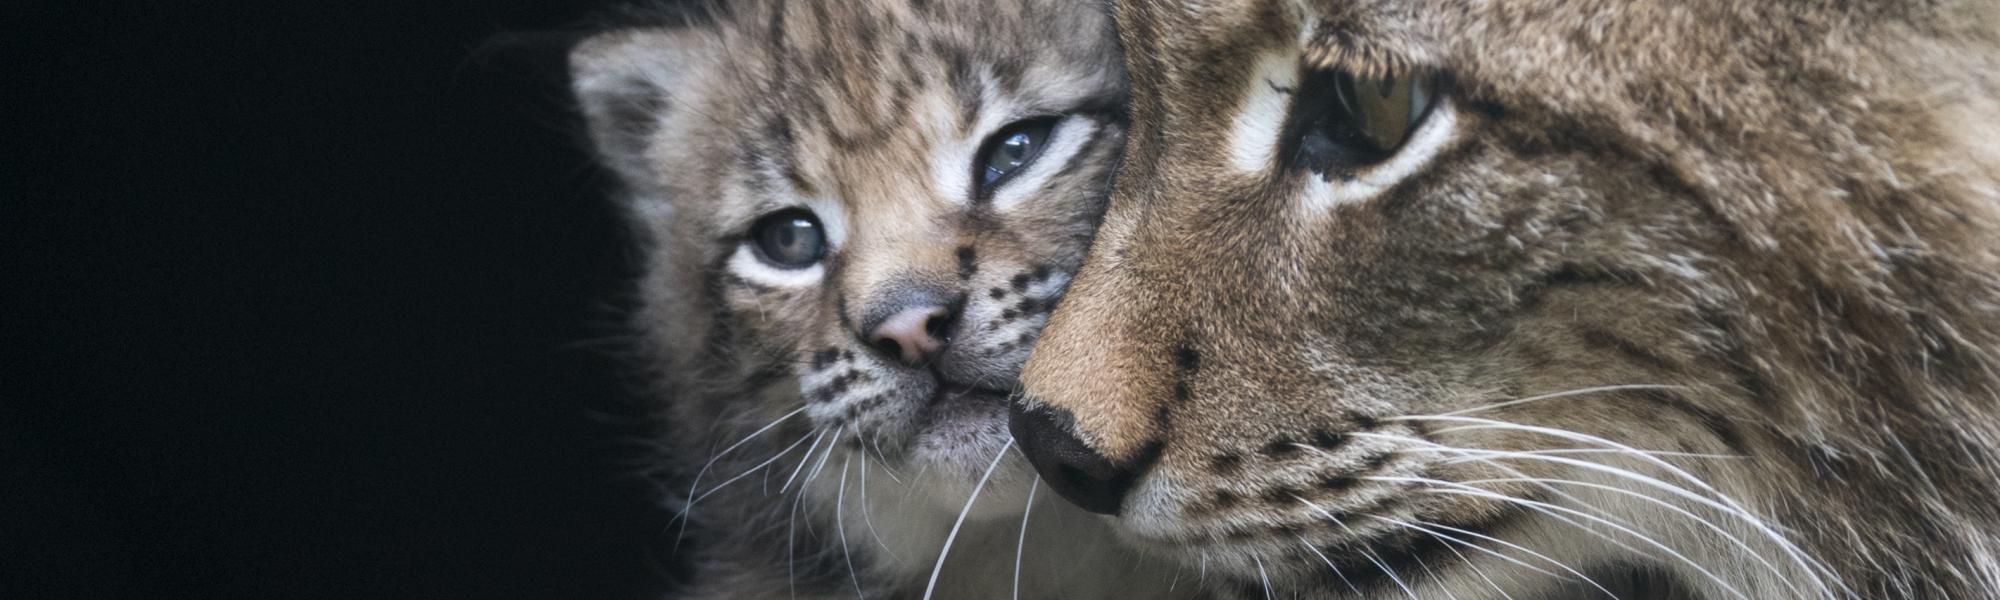 Katzenluchs-Mama mit Baby im Wild- und Erlebnispark Ferleiten.